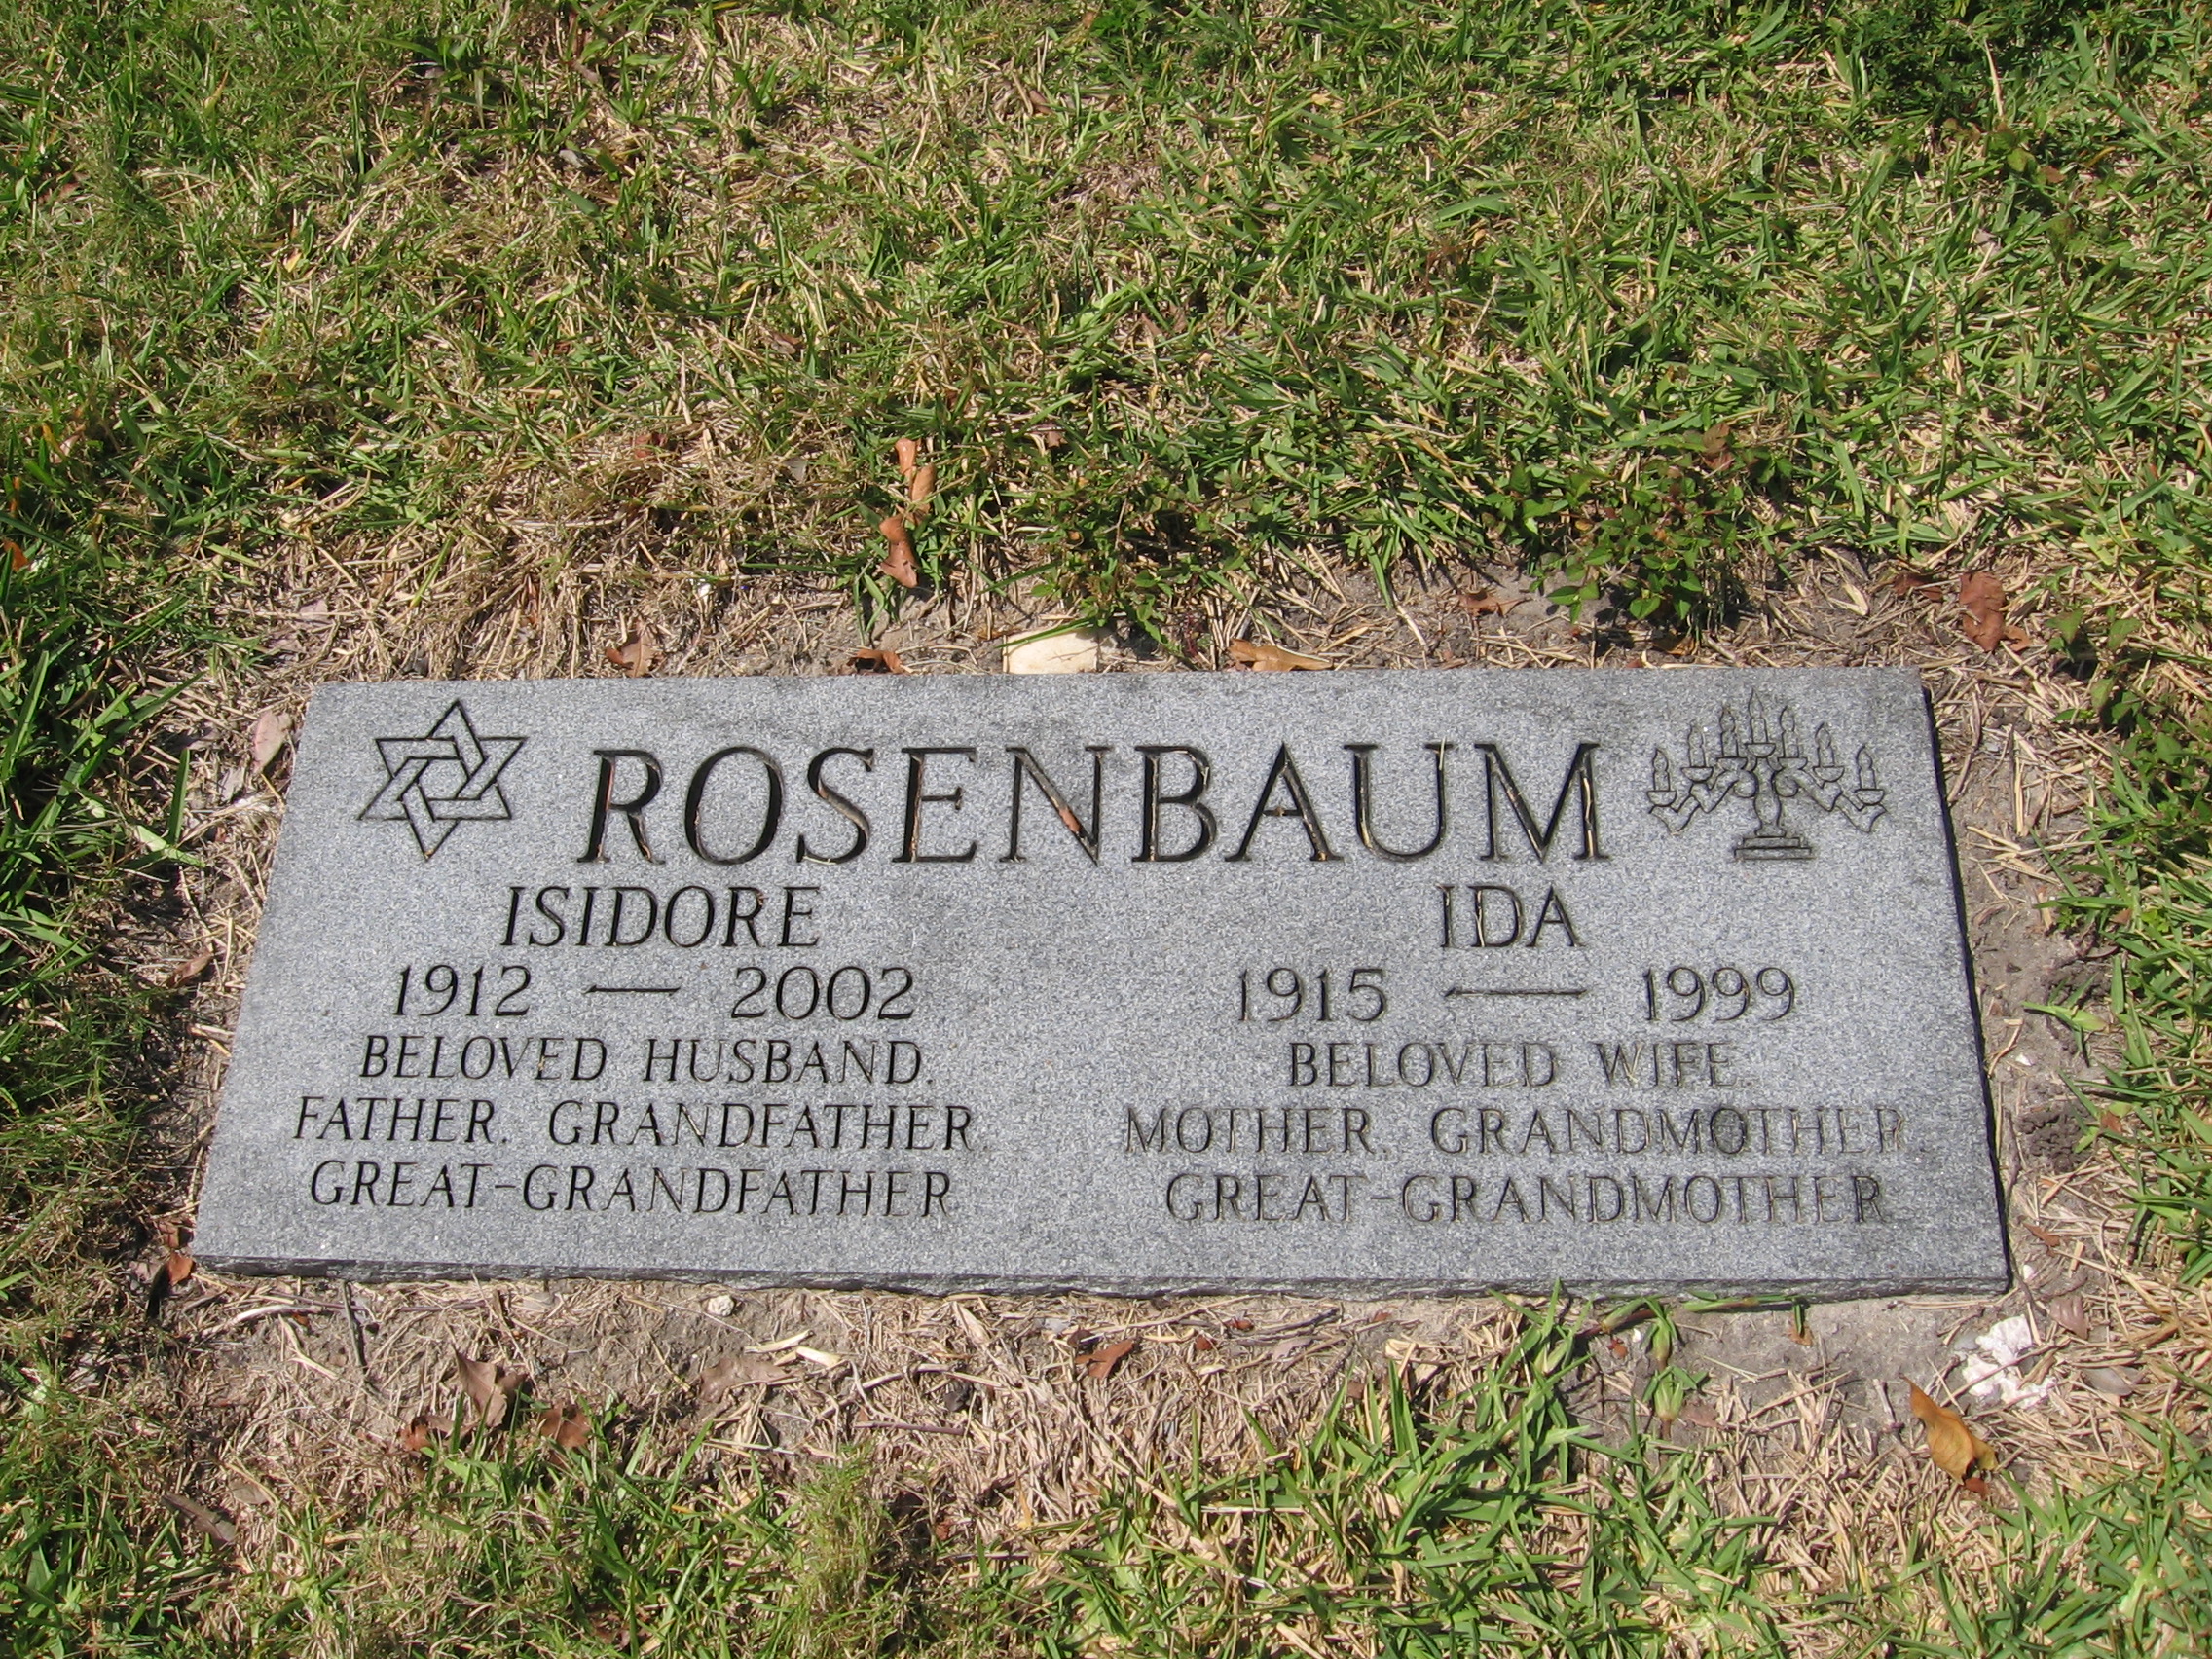 Isidore Rosenbaum